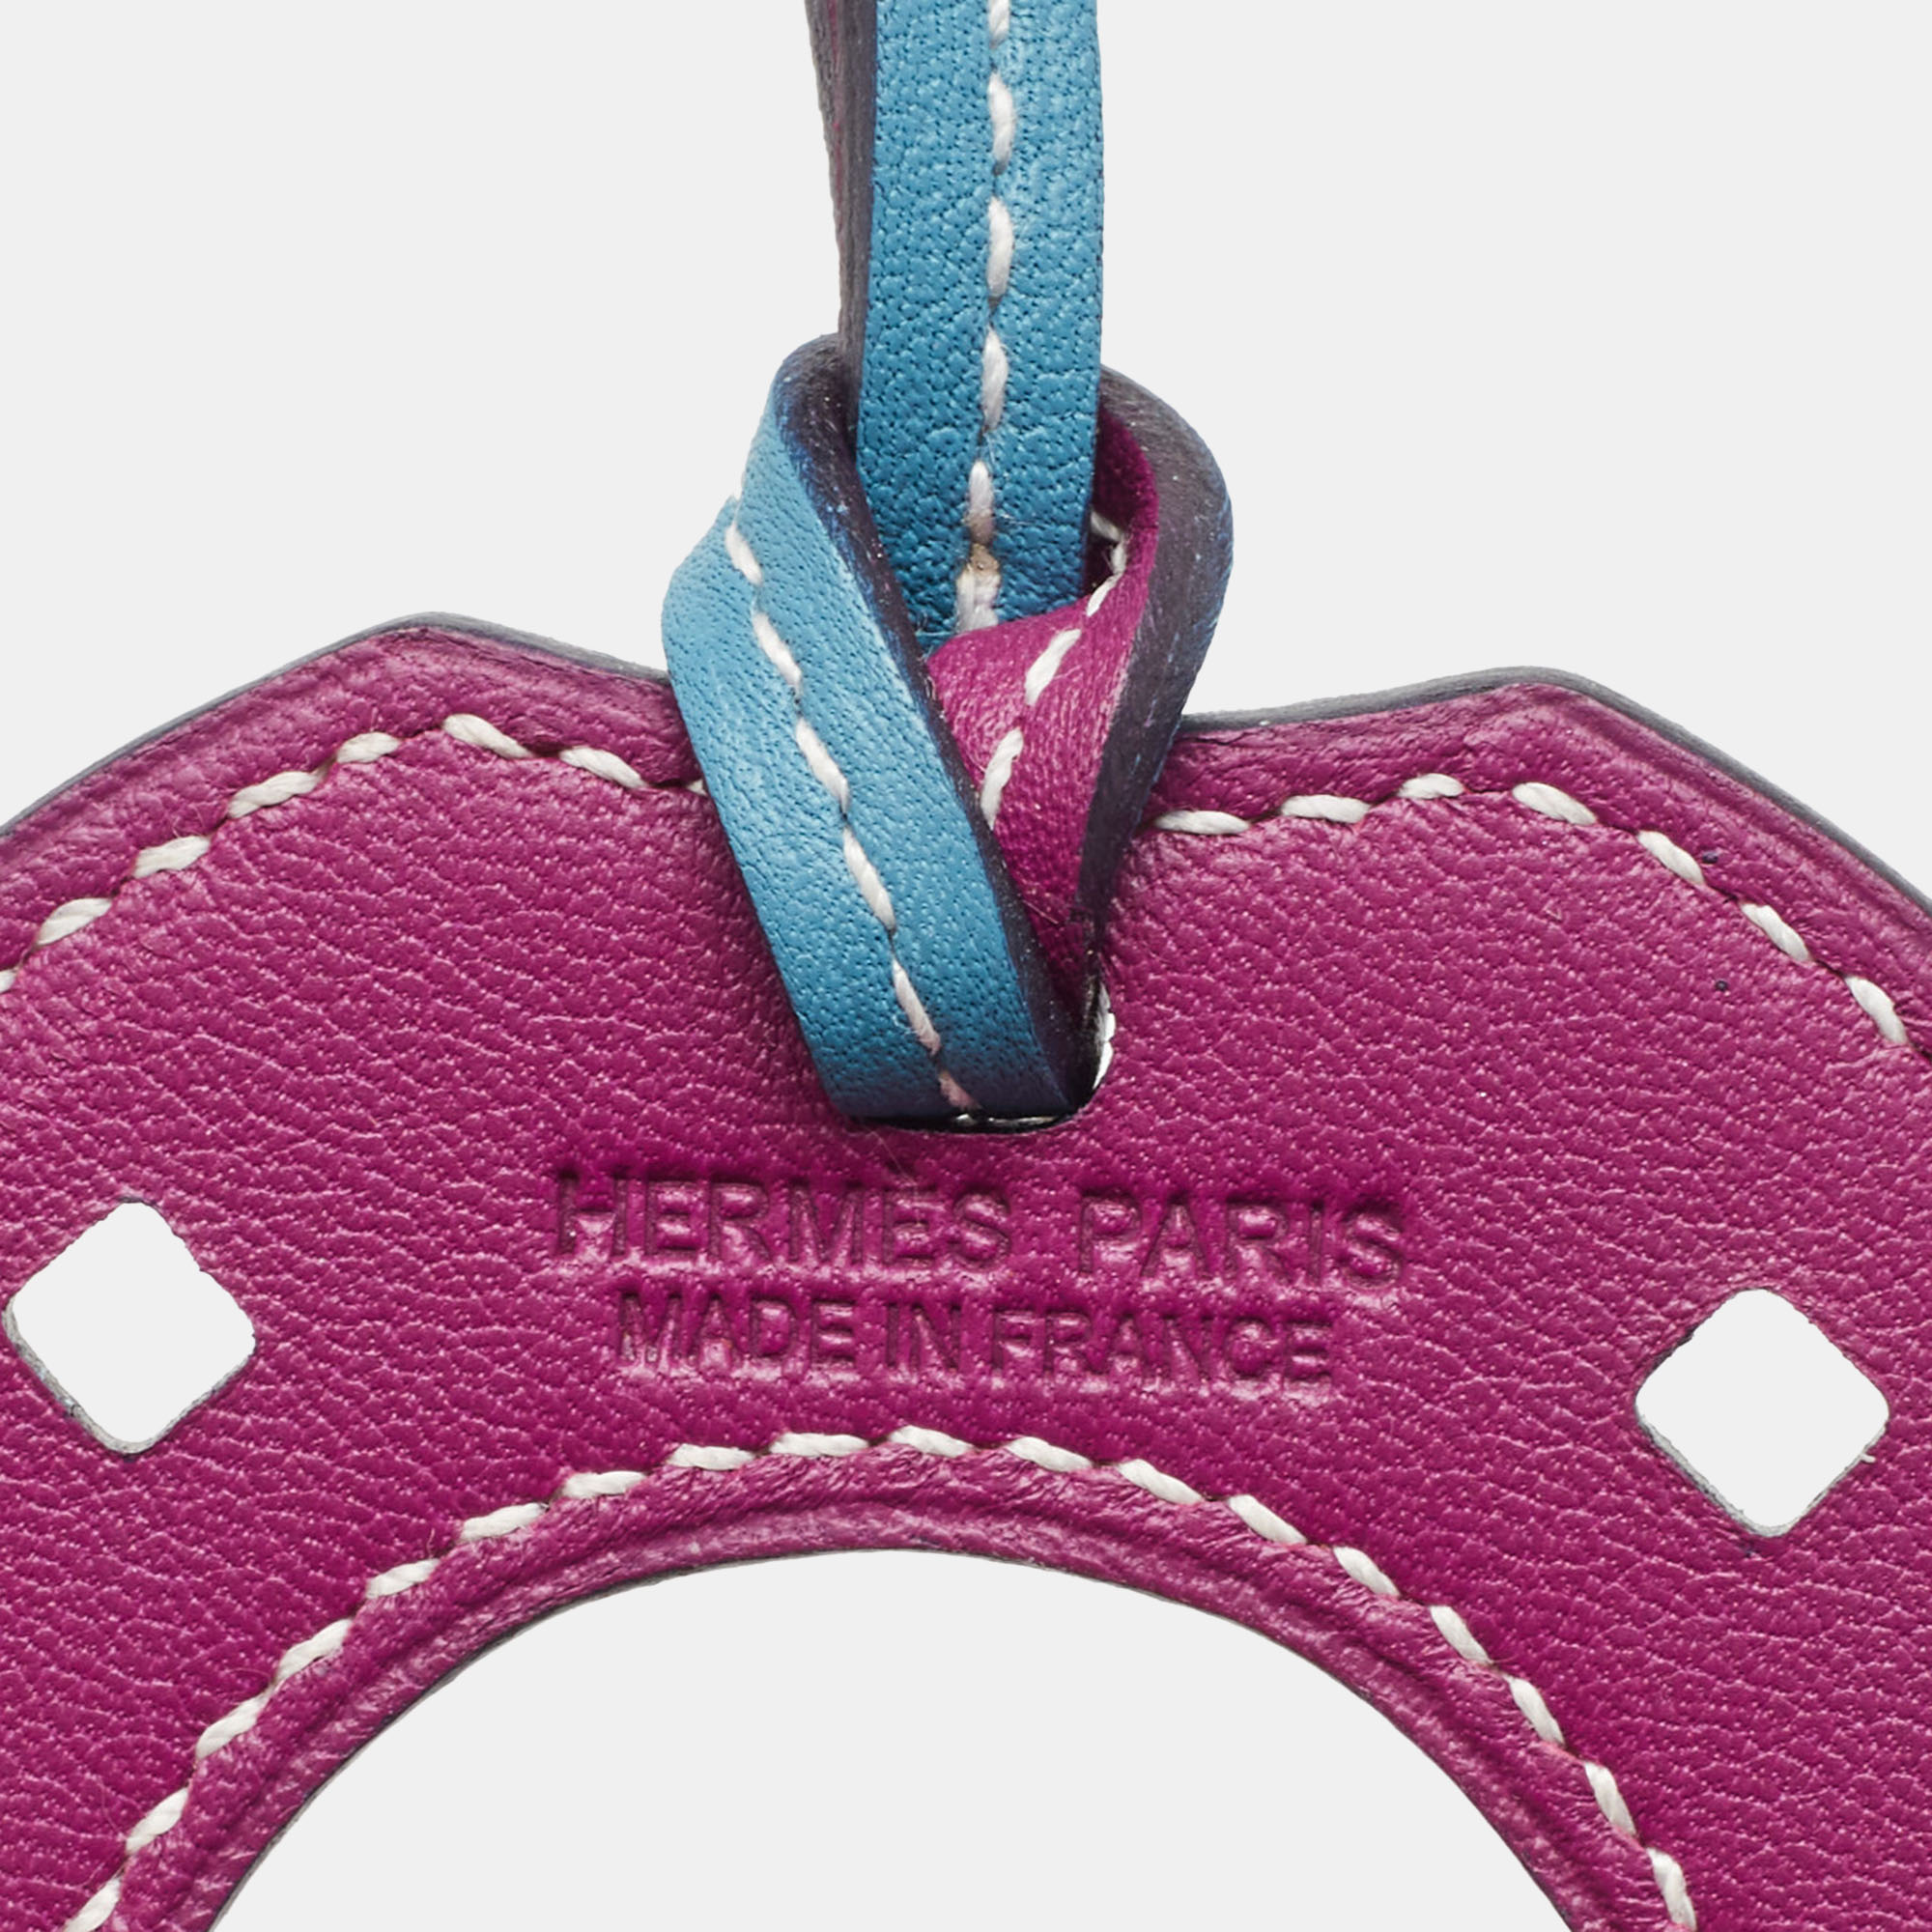 Hermes Bleu Jean/Ultraviolet Swift Leather Paddock Fer A Cheval Bag Charm